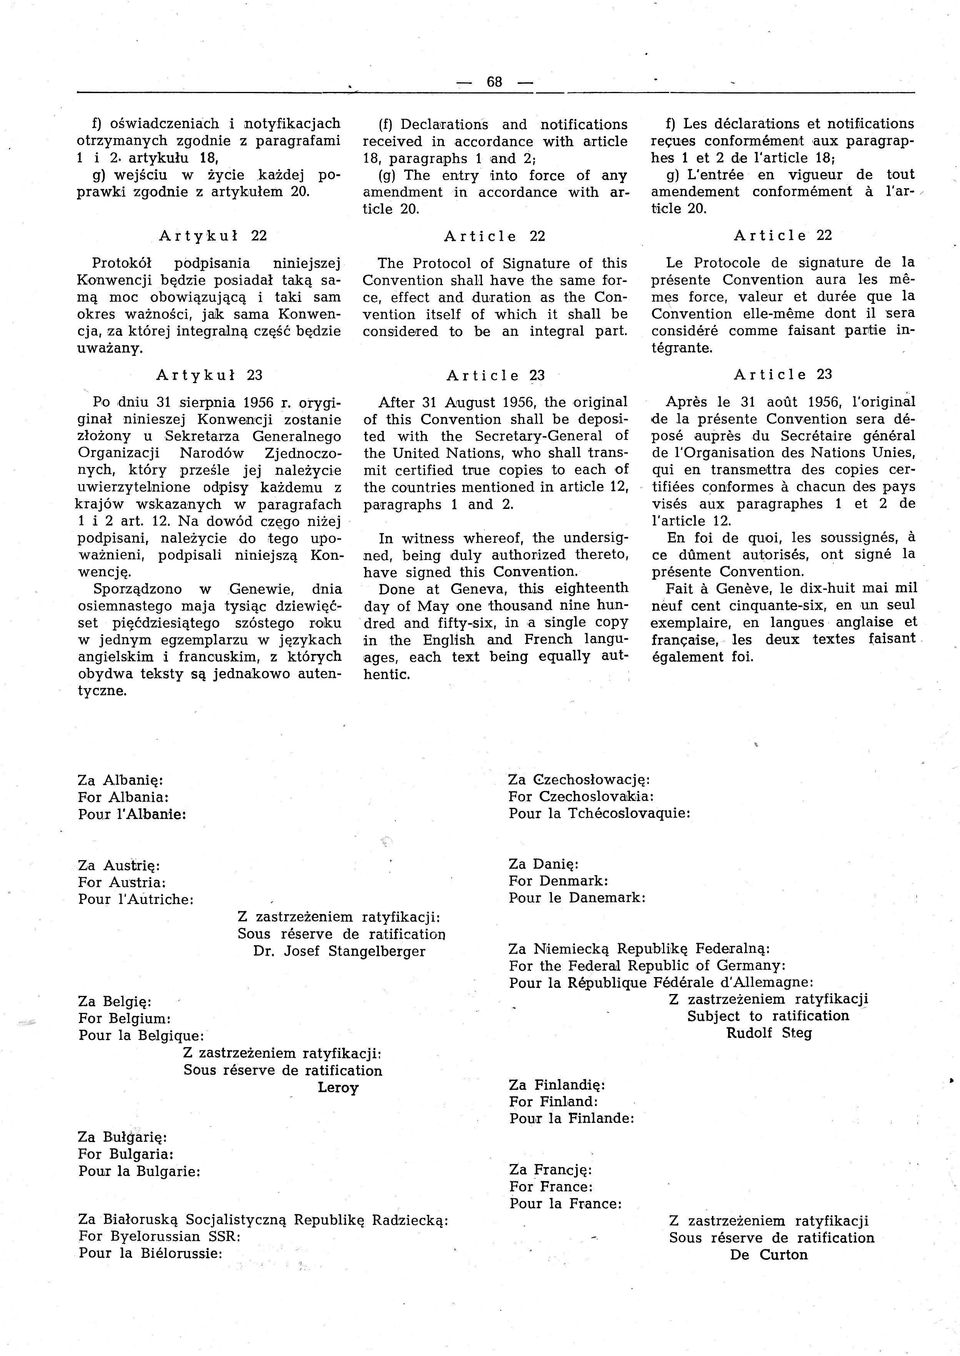 Ar tyk u ł 23 Po dniu 31 sierpnia 1956 r. orygiginał ninieszej Konwen1cji zostanie złożony u Sekretarza Generalnego Organizacji Narodów Zjednoczonych, który prześle jej należycie uwierzyte.